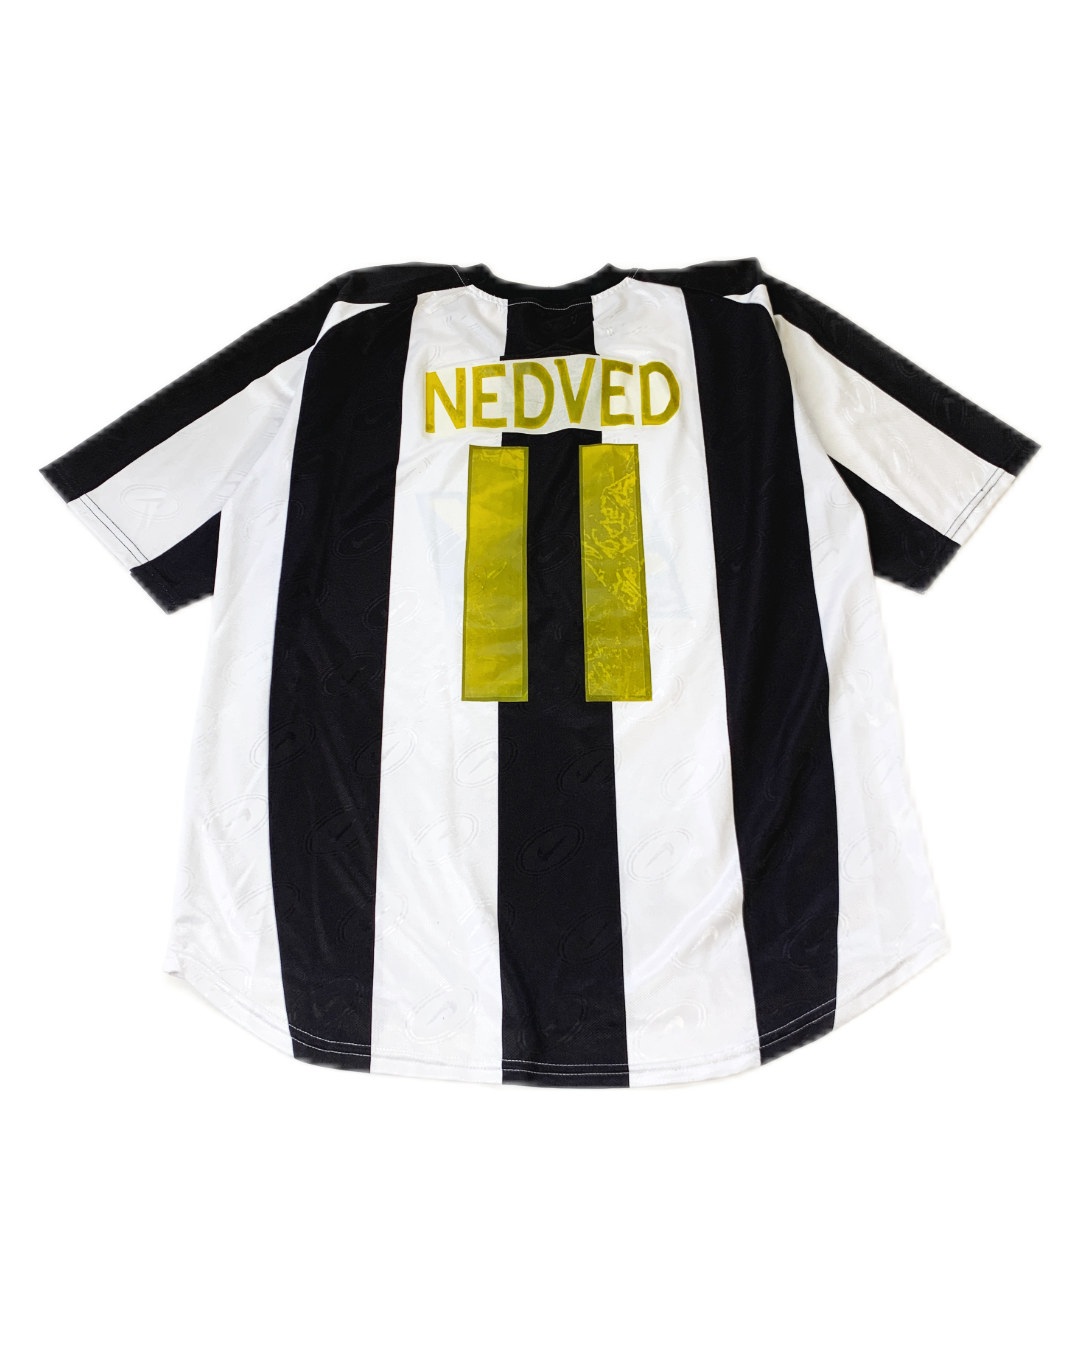 Nike Juventus 2004 Vintage Jersey - L